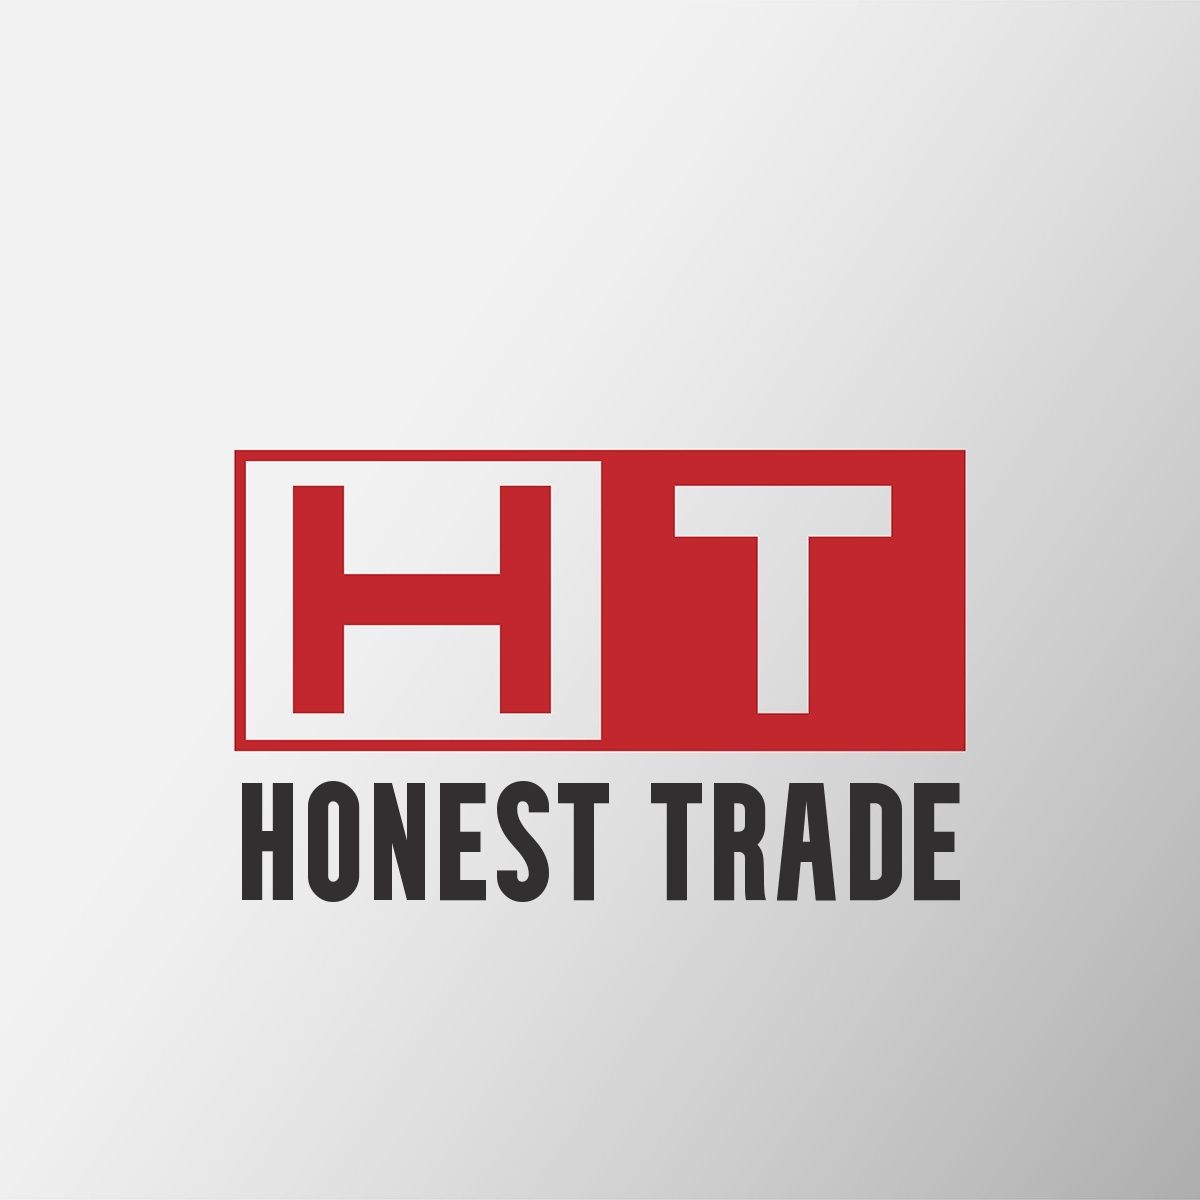 Honest Trade logo